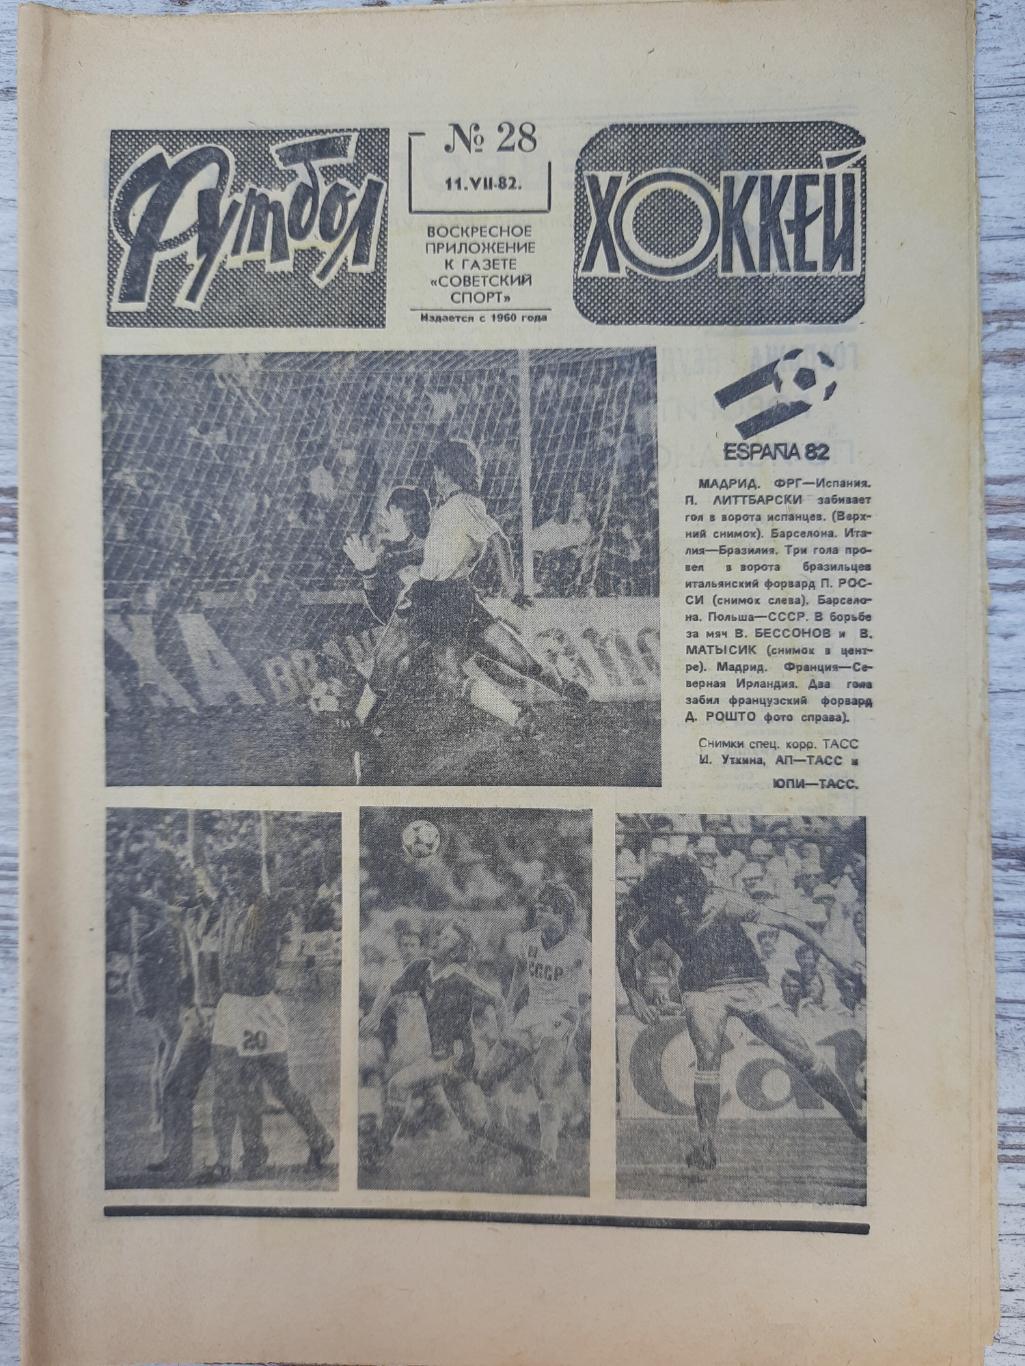 еженедельник футбол-хоккей #28, 1982.